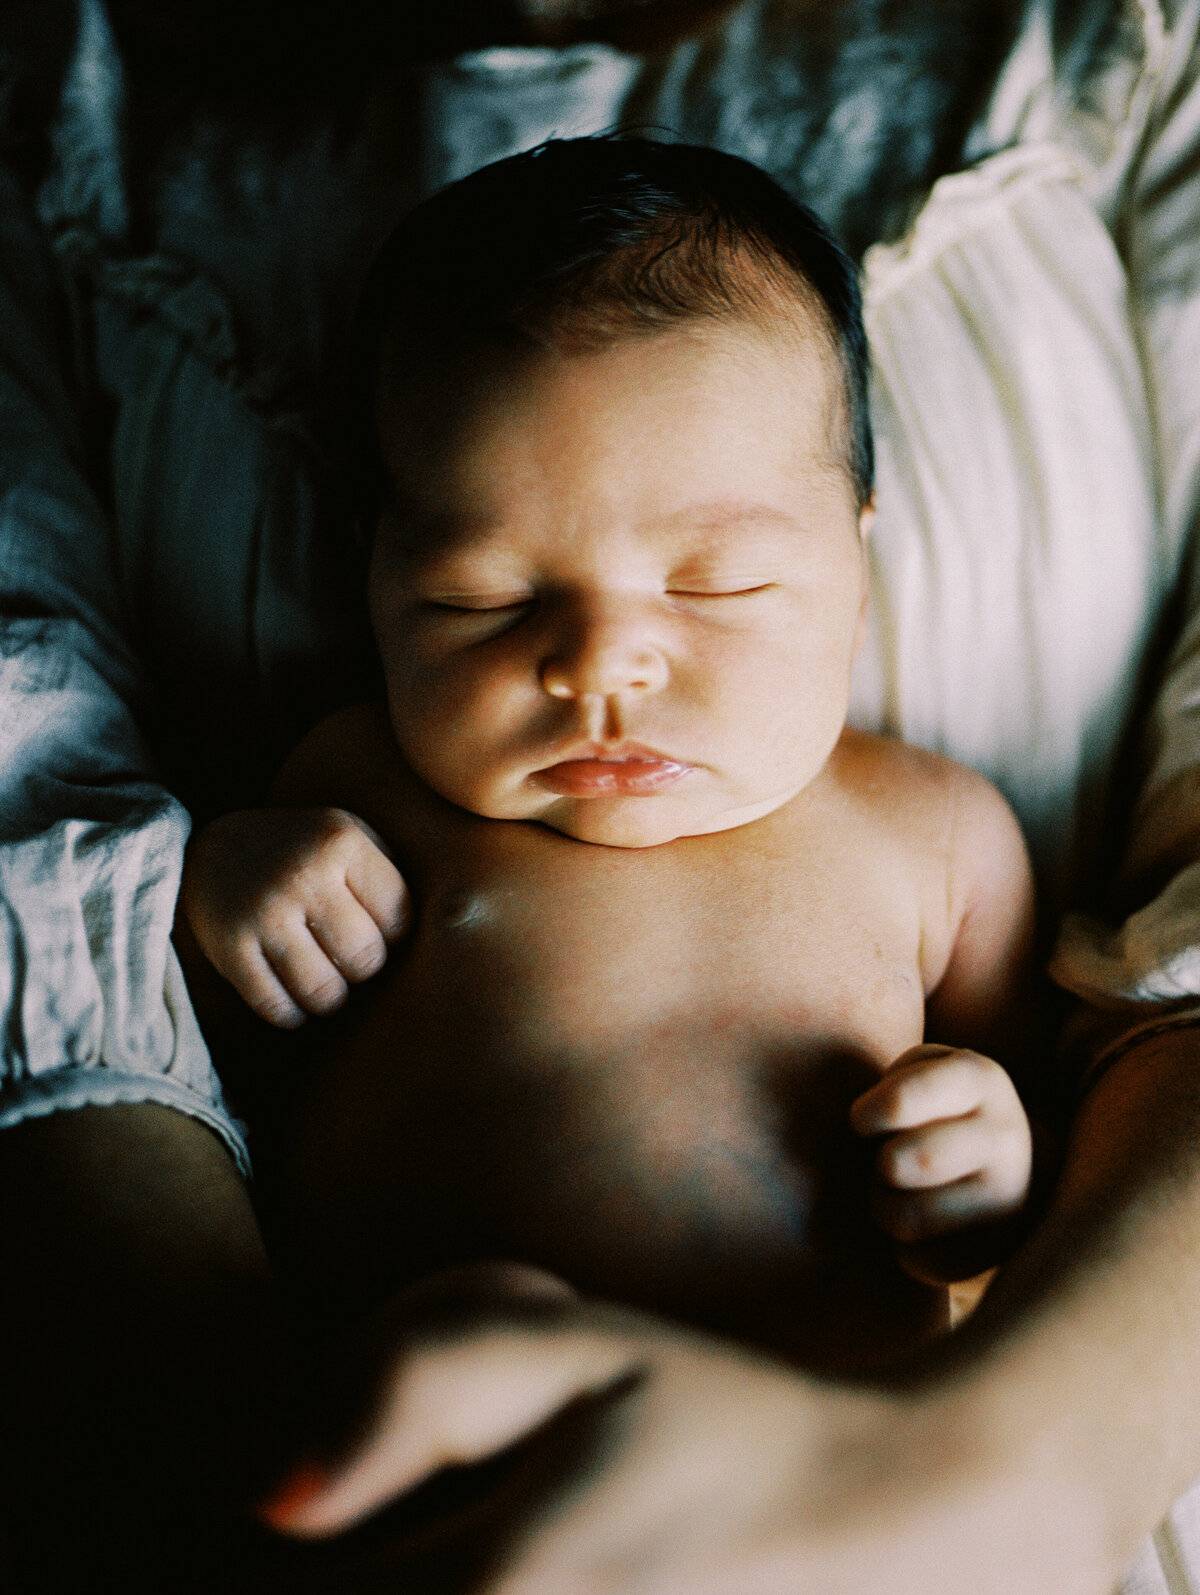 denver-colorado-newborn-baby-girl-napping-mfrh-original